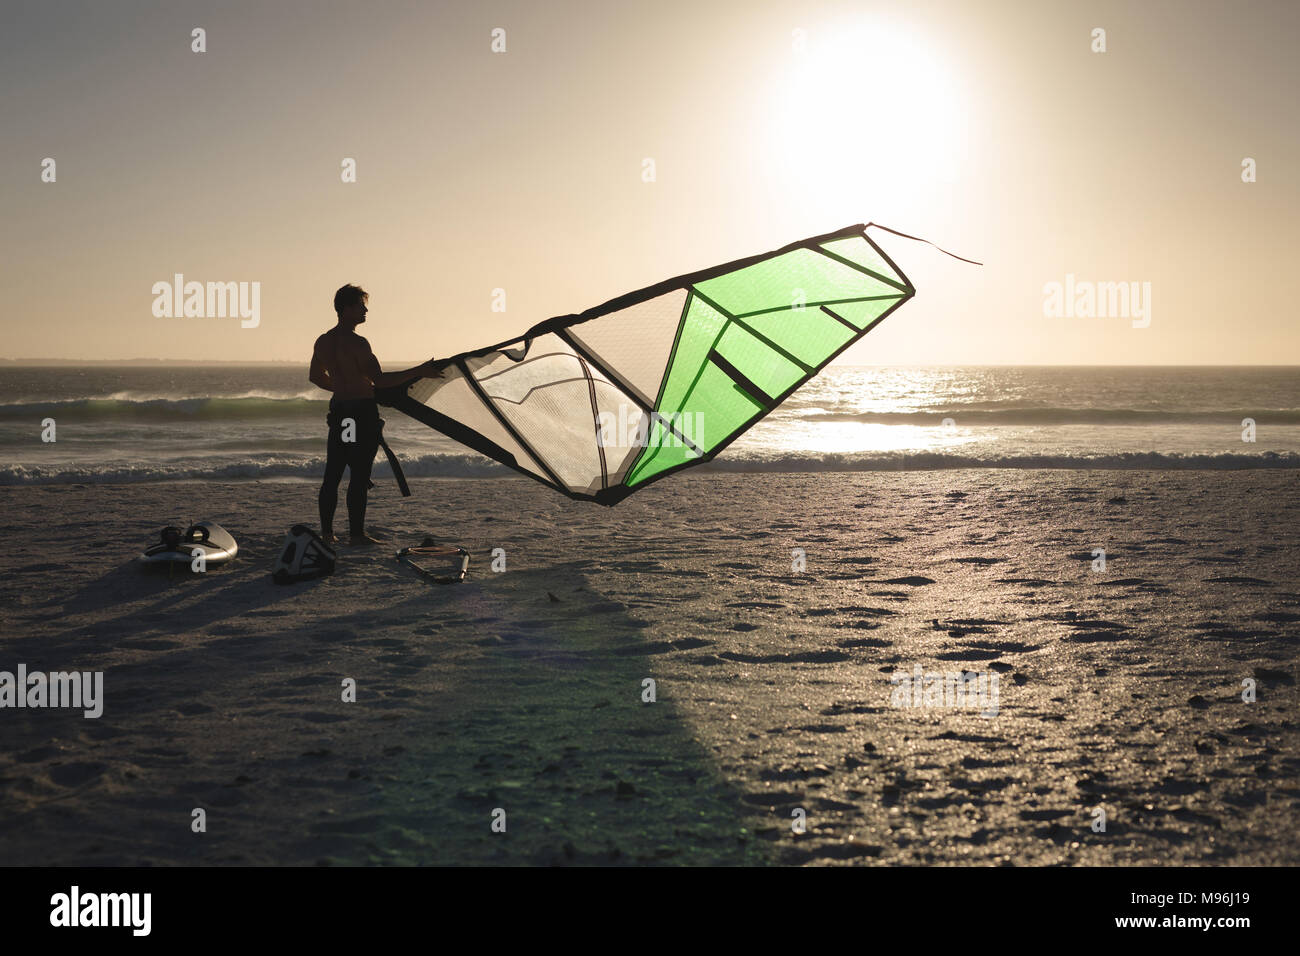 La préparation d'un kite surfeur mâle sur une plage Banque D'Images